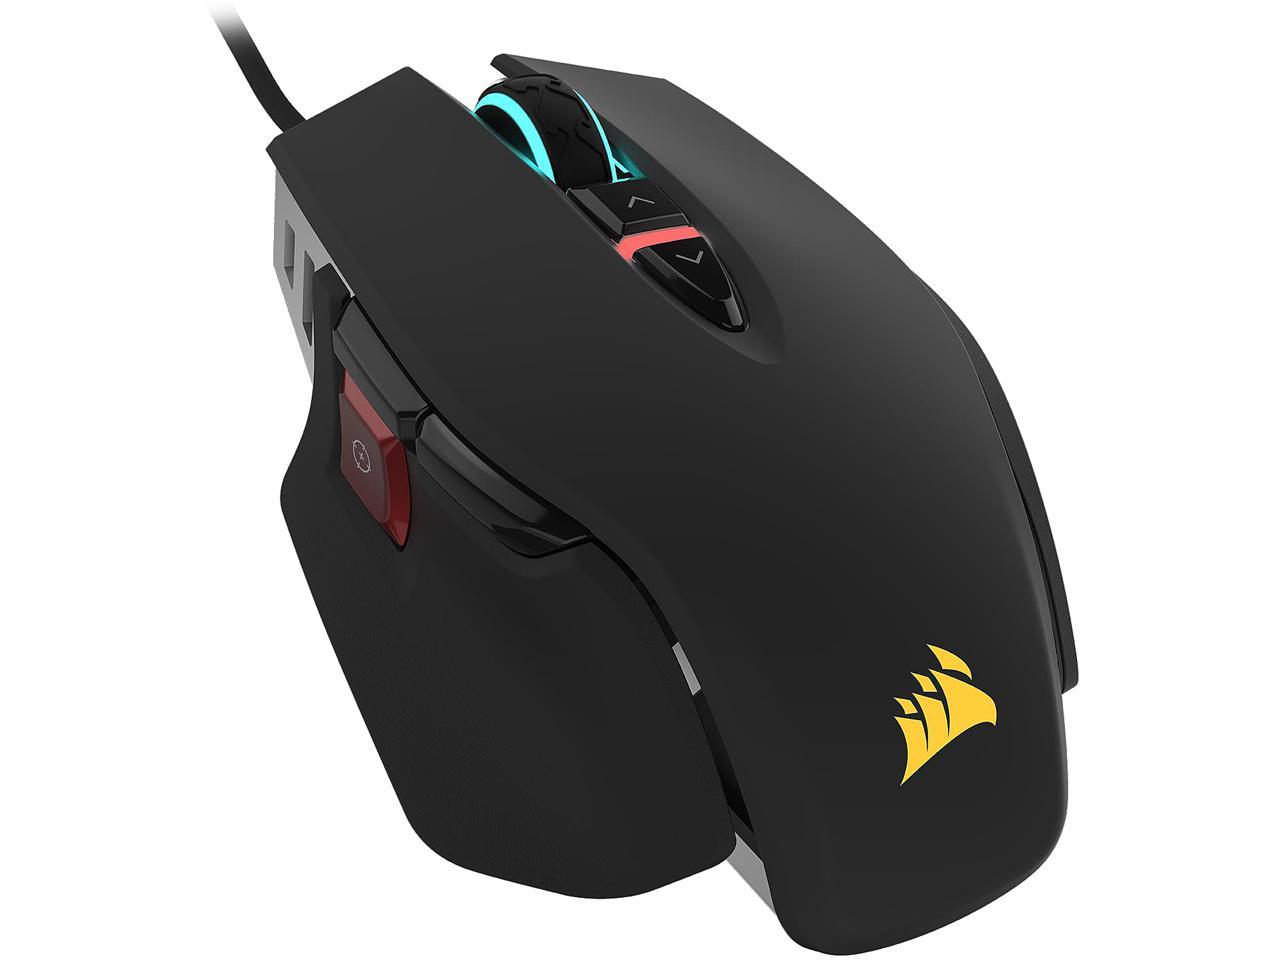 slim gå i stå Fortolke Corsair M65 RGB ELITE Tunable FPS Gaming Mouse, Black - Newegg.com